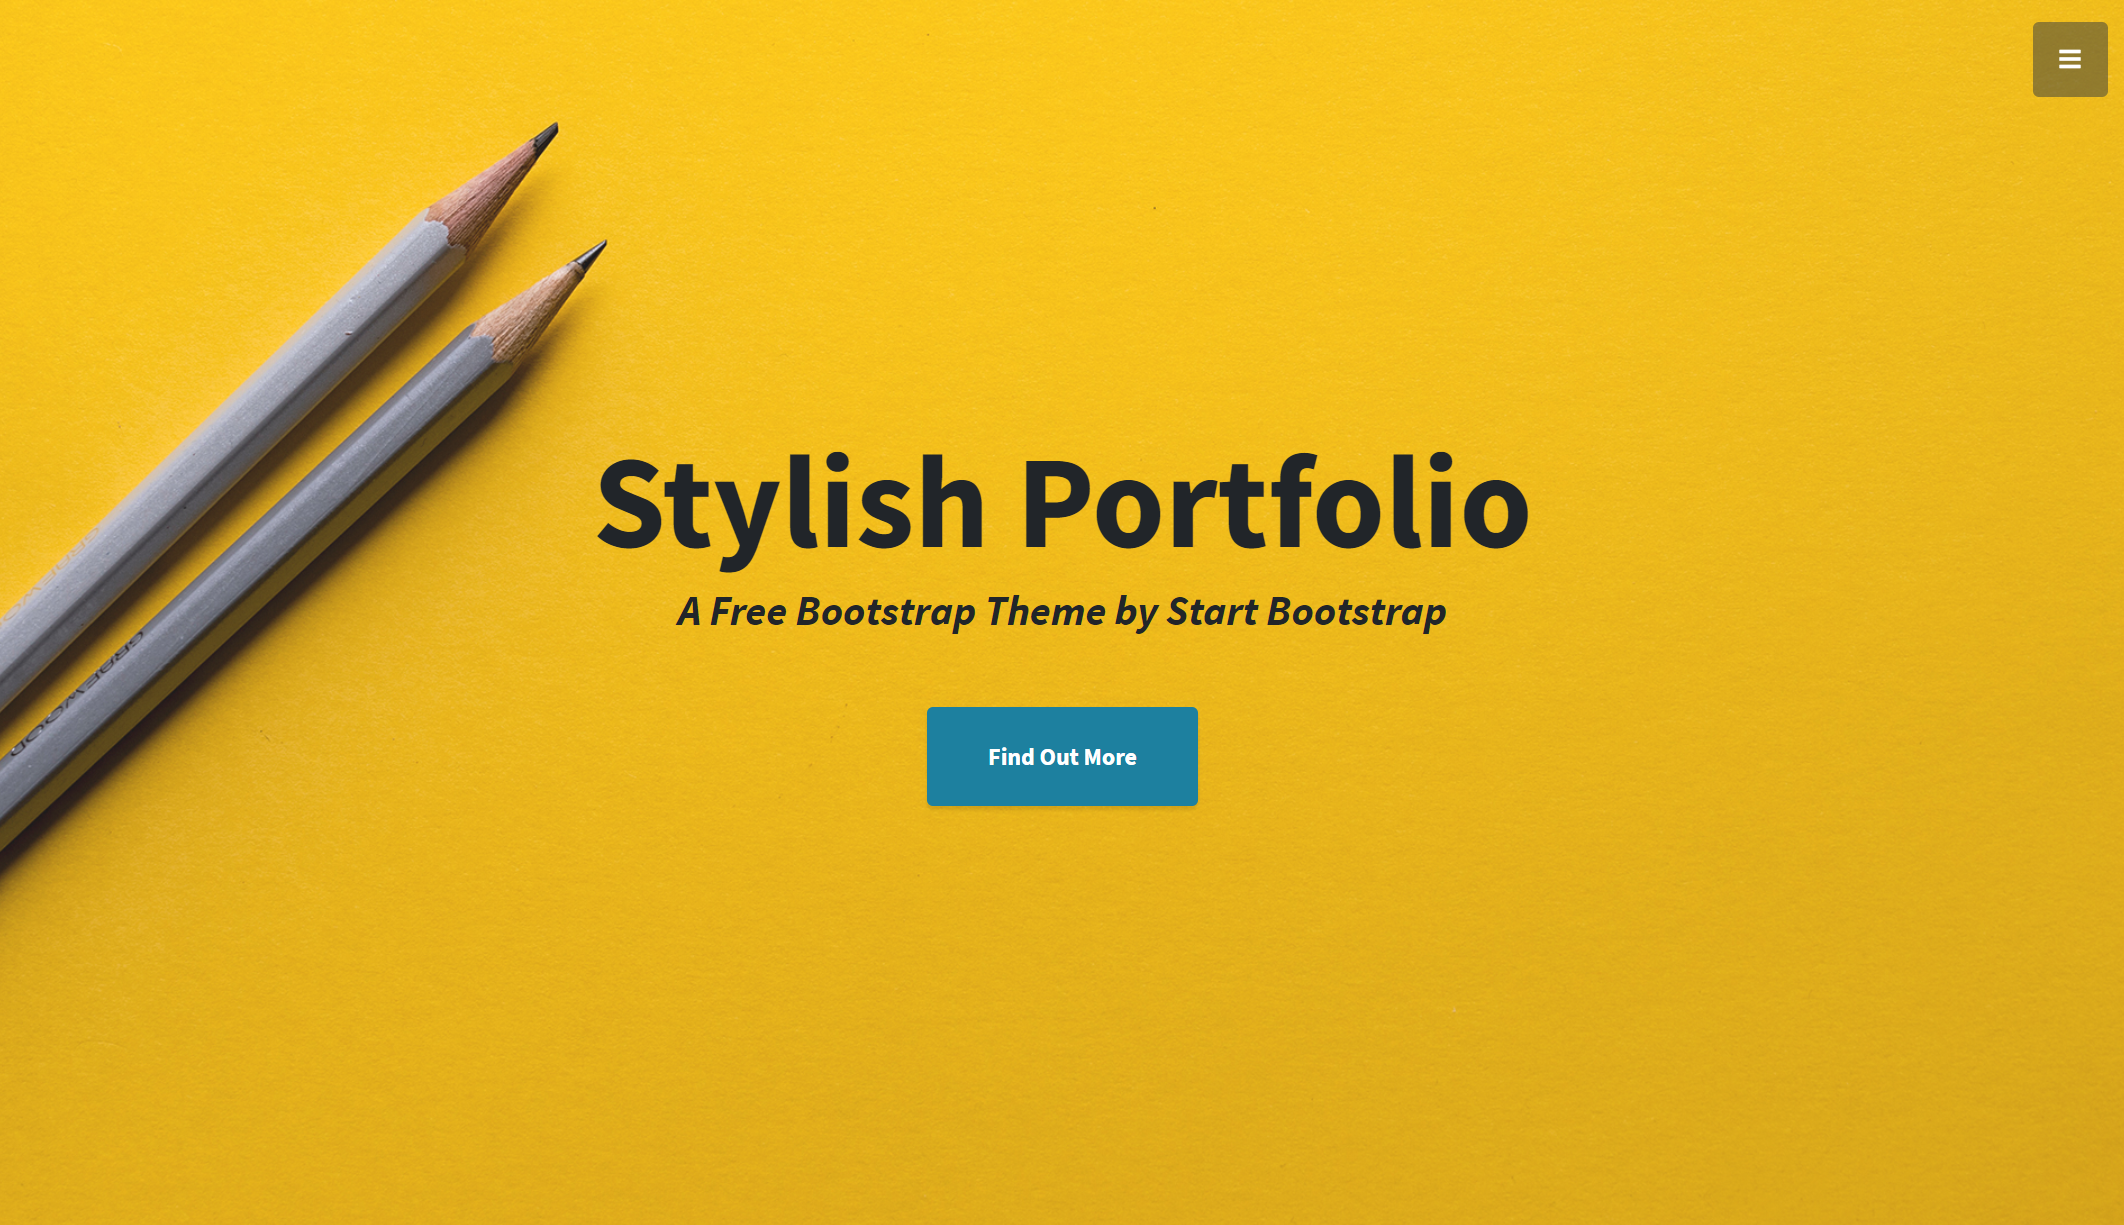 StylishPortfolio - A Stylish One Page Bootstrap Template